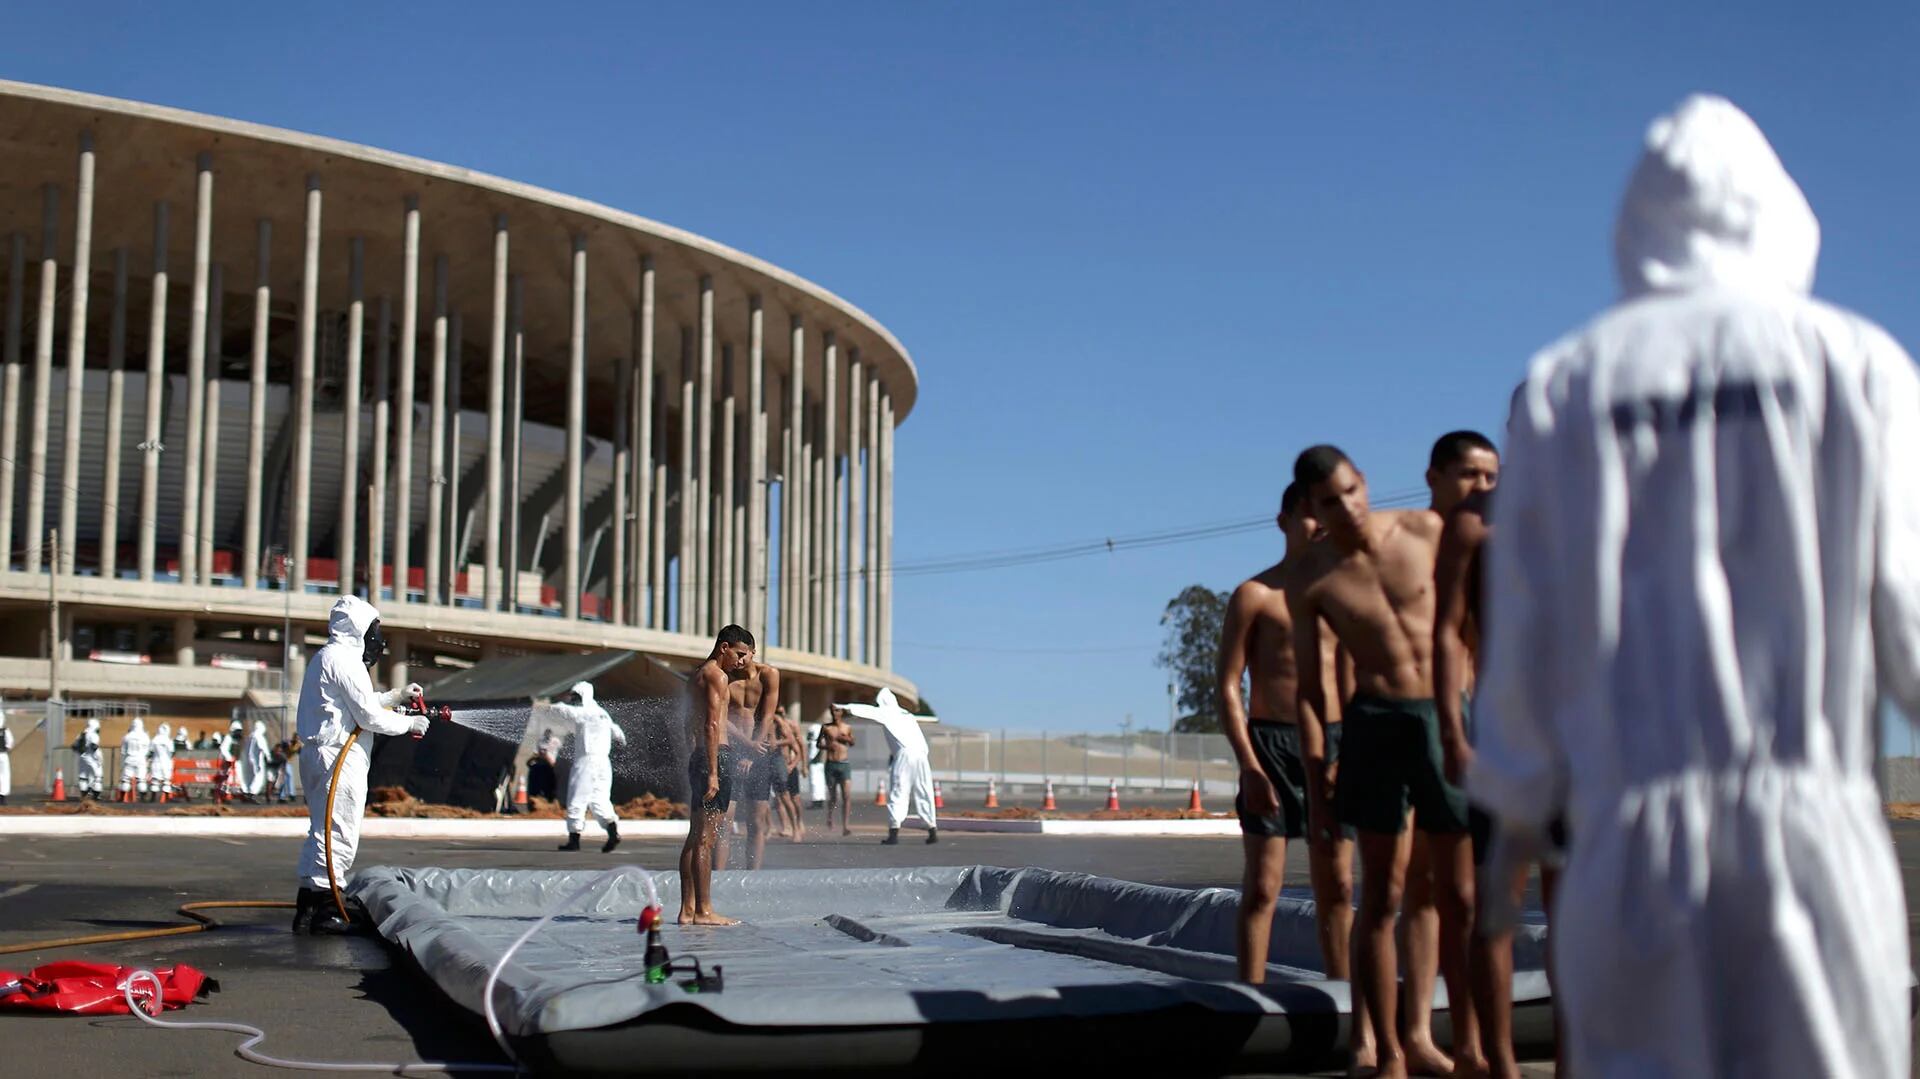 La semana pasada, la policía brasileña detuvo a un grupo terrorista que planeaba atentados para los Juegos (Reuters)